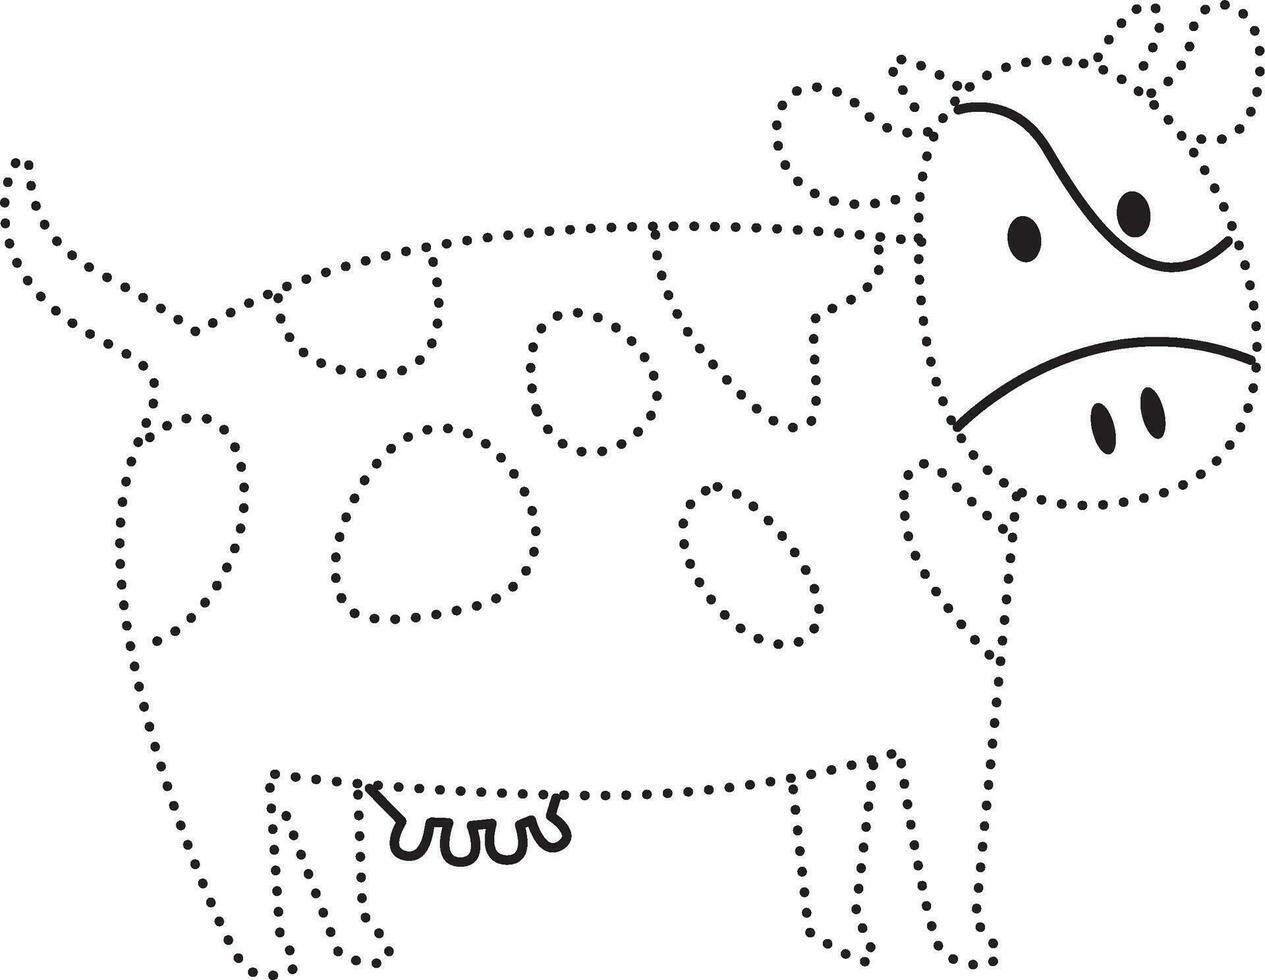 vache animal à pois ligne entraine toi dessiner dessin animé griffonnage kawaii anime coloration page mignonne illustration dessin agrafe art personnage chibi manga bande dessinée vecteur